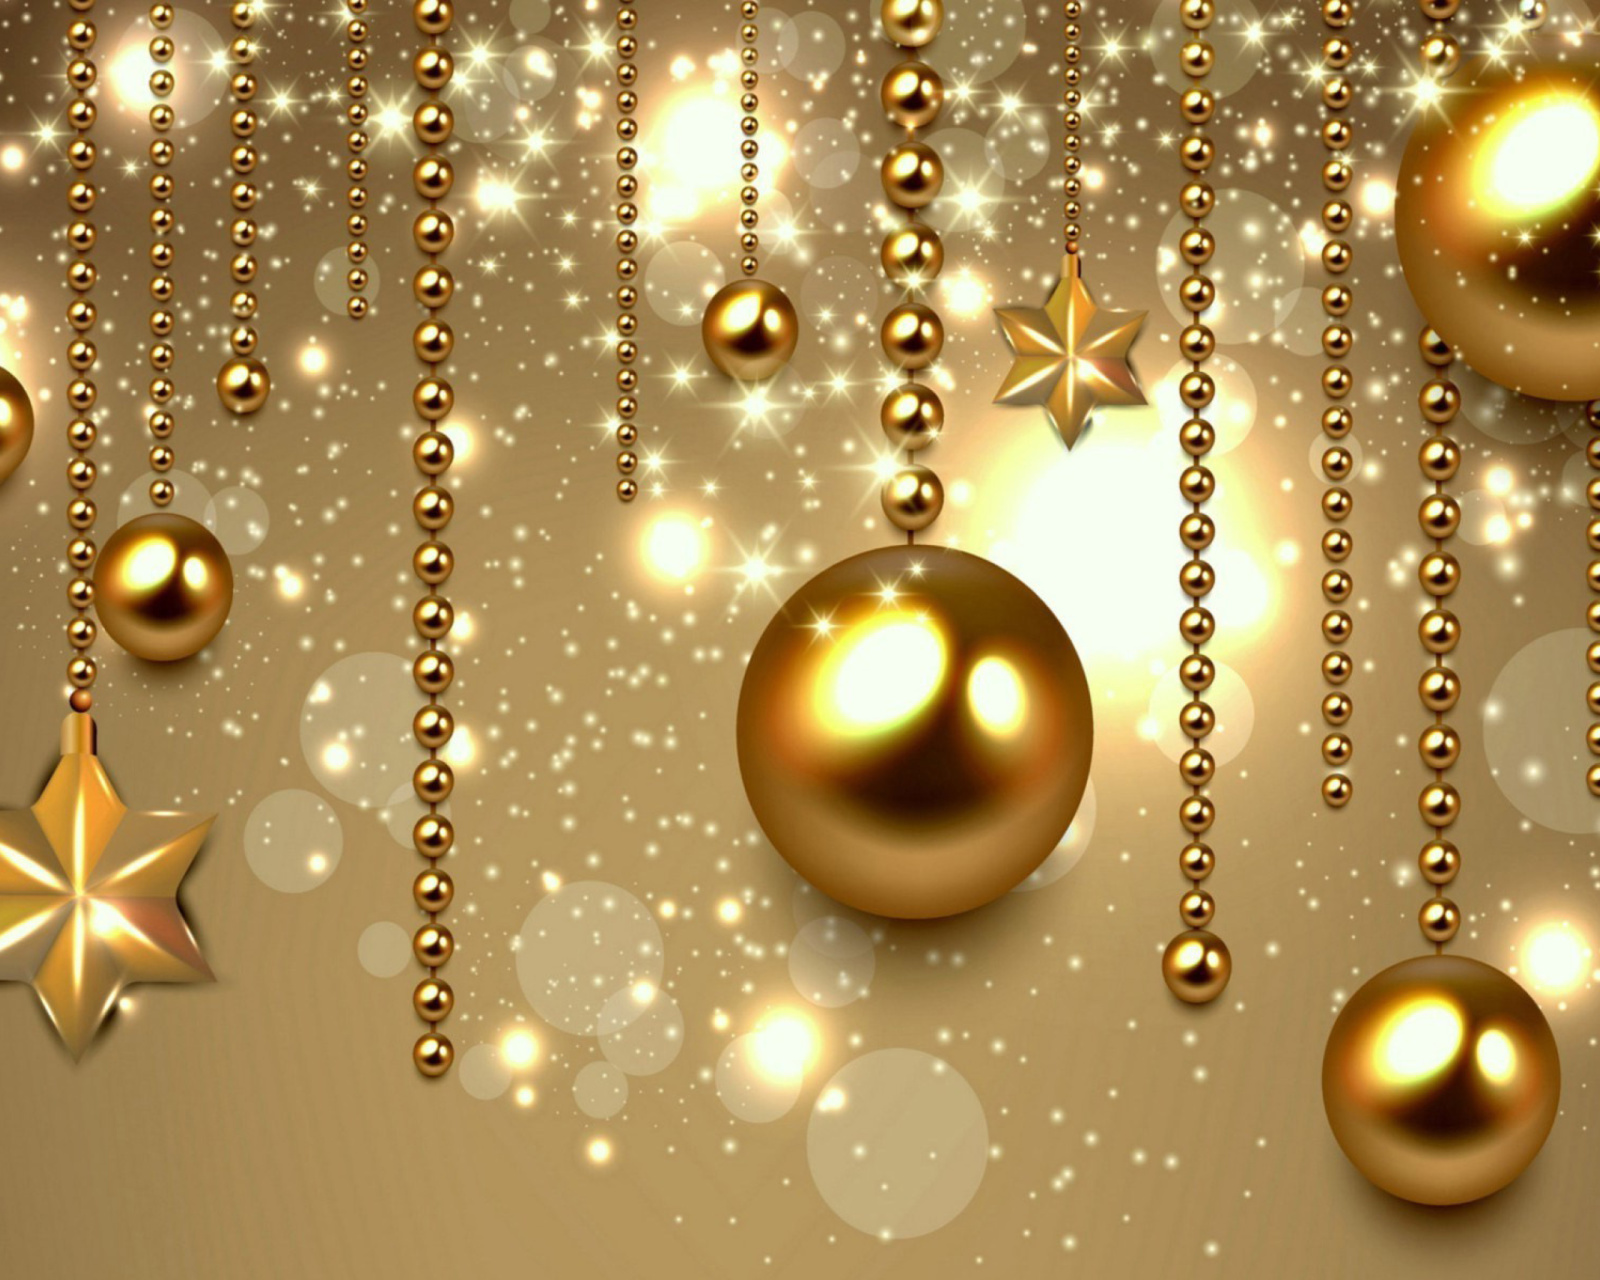 Golden Christmas Balls wallpaper 1600x1280